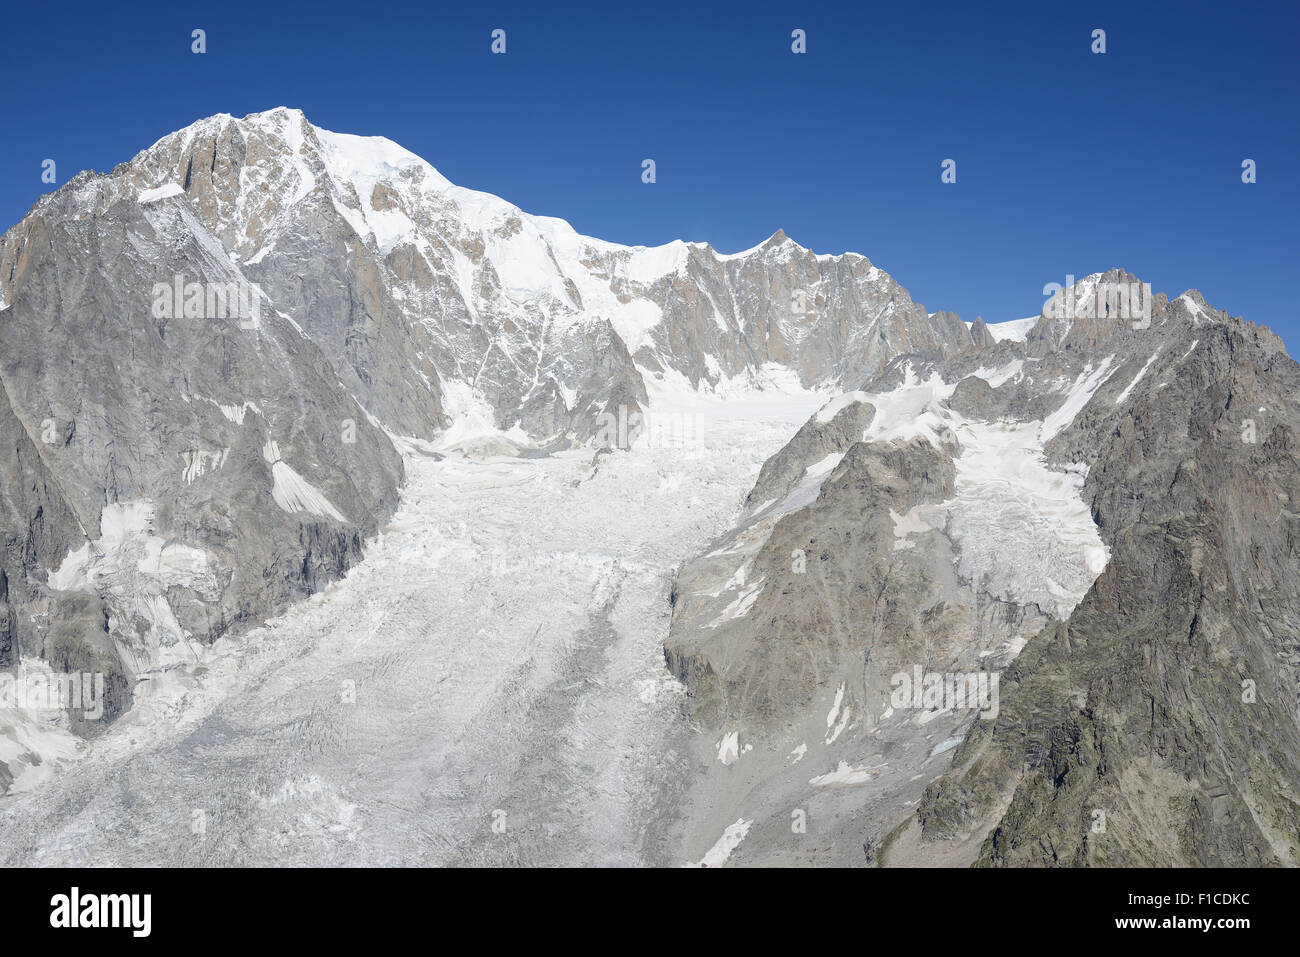 VUE AÉRIENNE.Sommet du Mont blanc (altitude : 4810 mètres) surplombant le glacier Brenva, vue de l'est.Courmayeur, Vallée d'Aoste, Italie. Banque D'Images